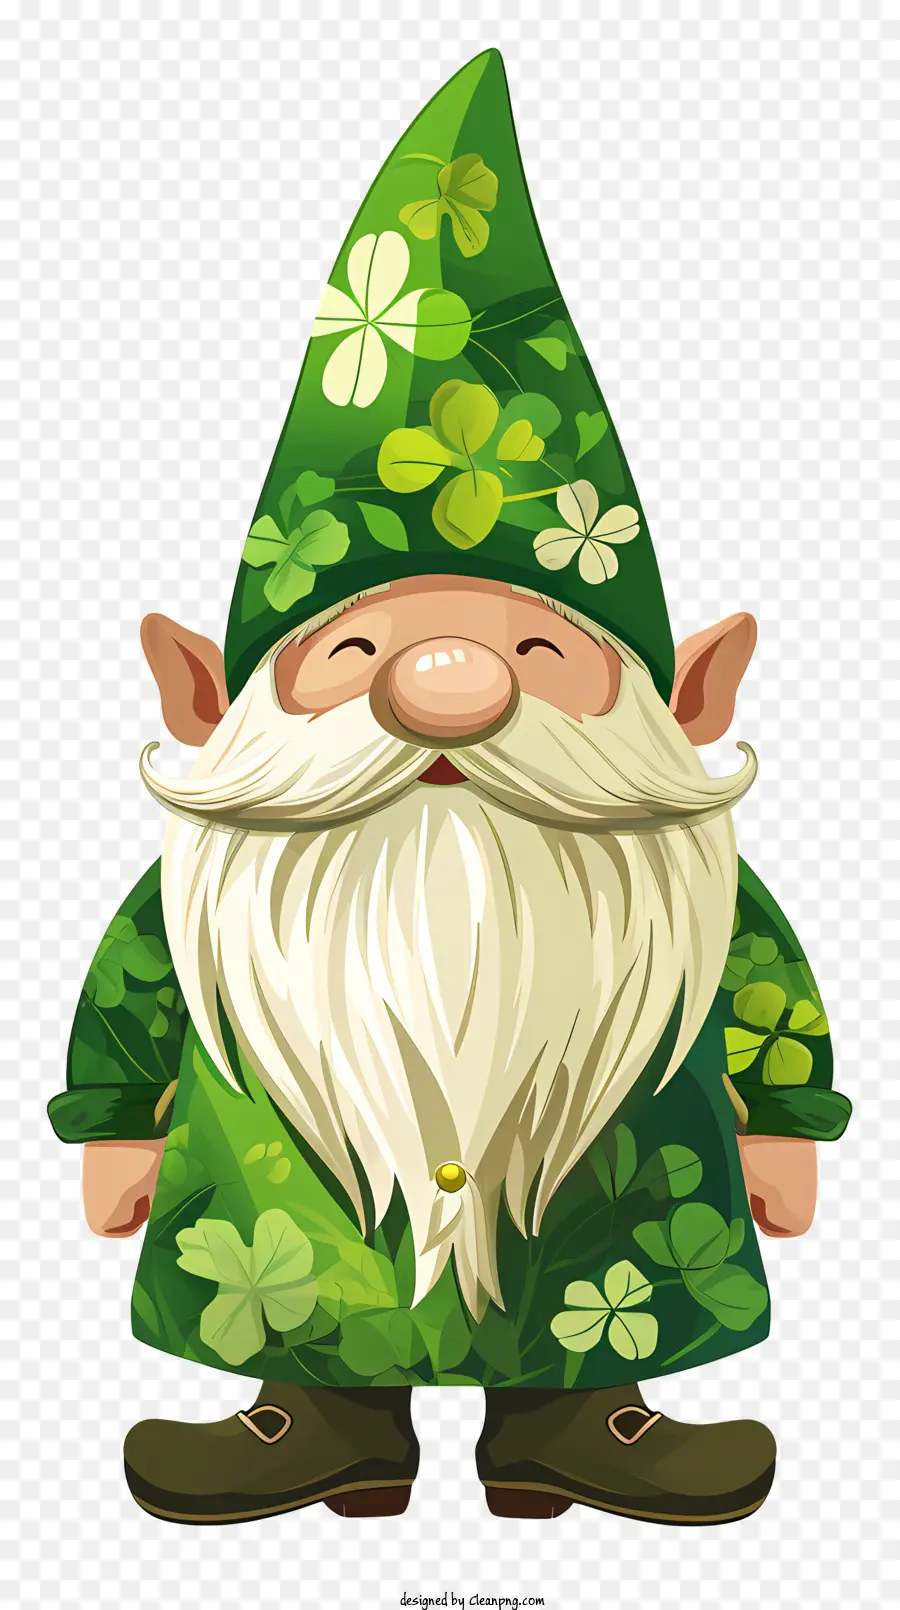 St. Patrick's Day Gnome Cartoon Gnome Grüne Kleidung Shamrock Muster Grüner Hut - Cartoon Gnom in Grün mit Shamrock -Muster